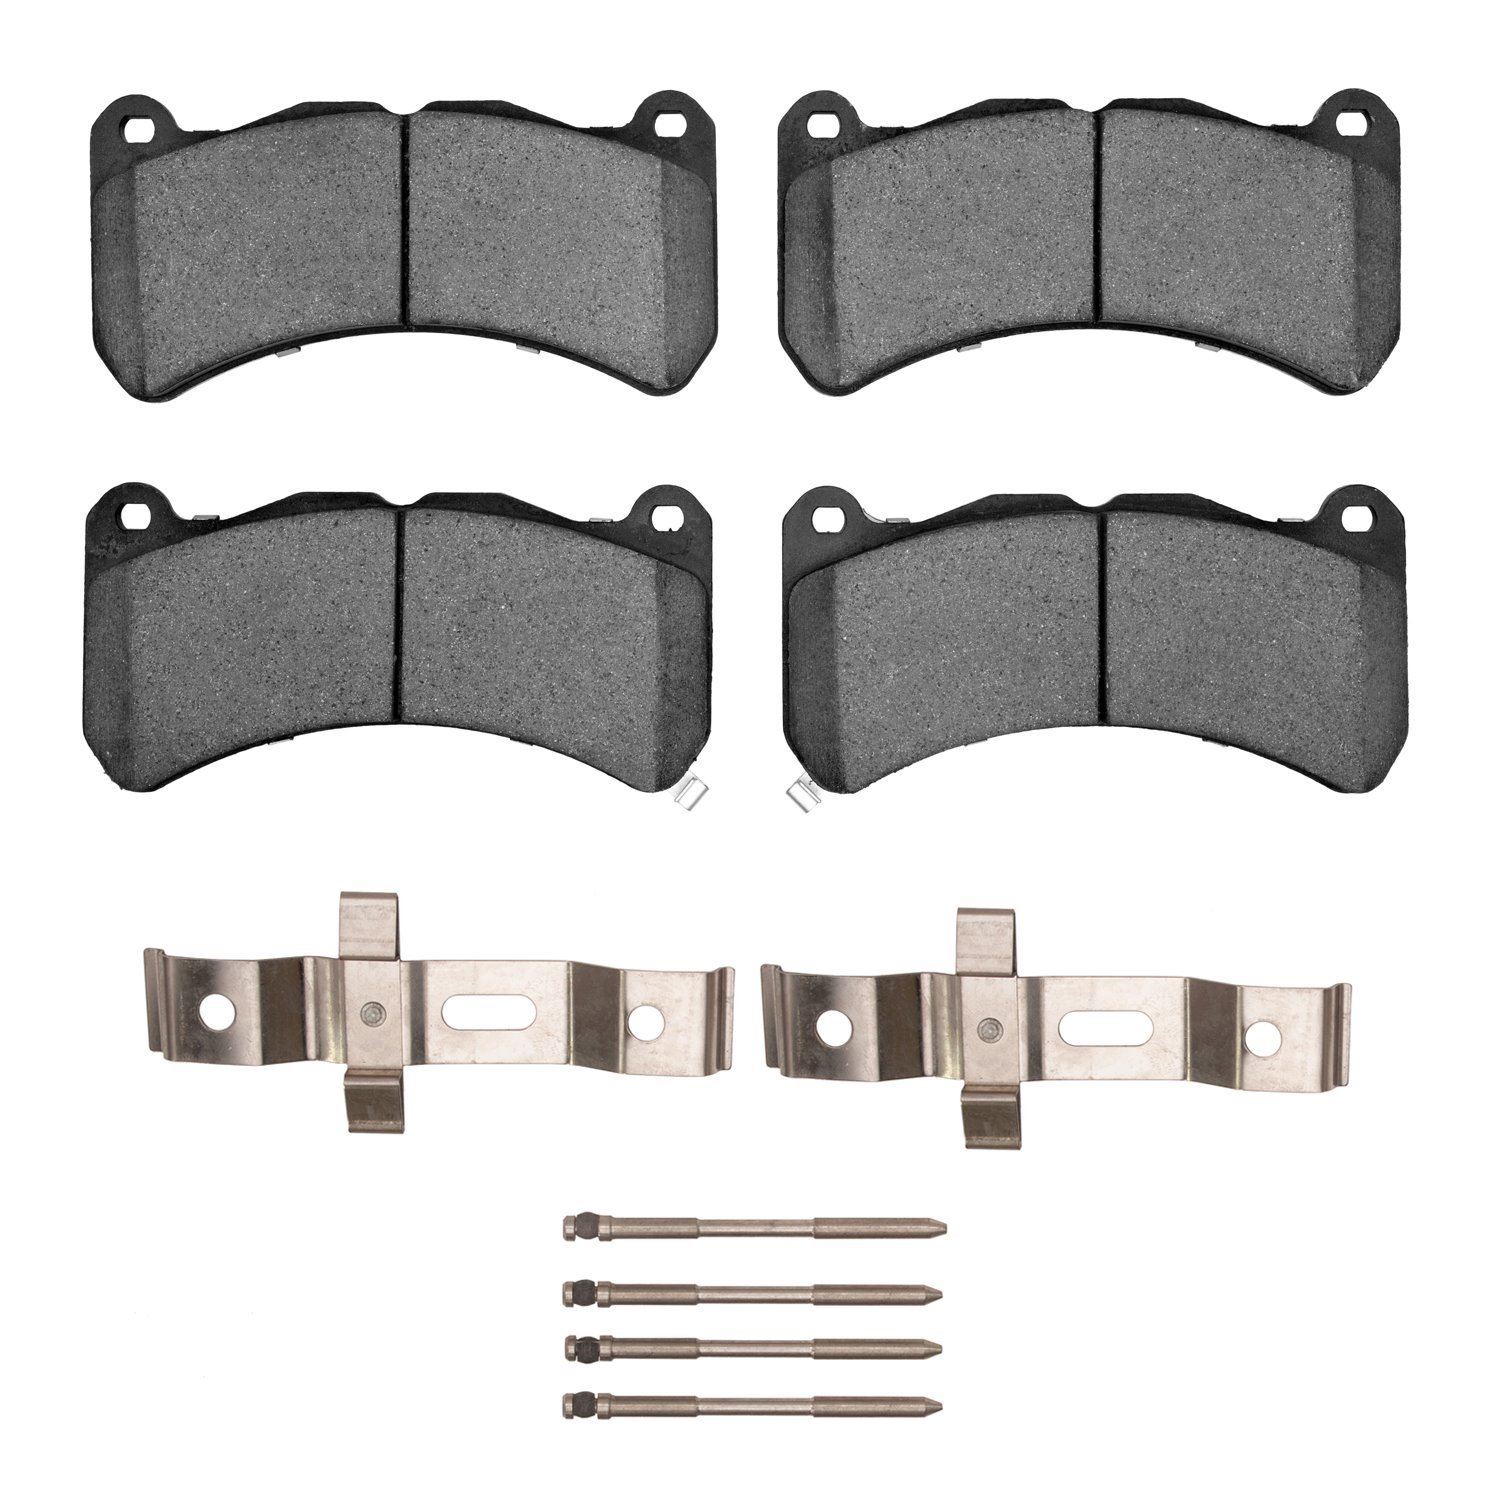 Ceramic Brake Pads & Hardware Kit, 2008-2021 Fits Multiple Makes/Models, Position: Front